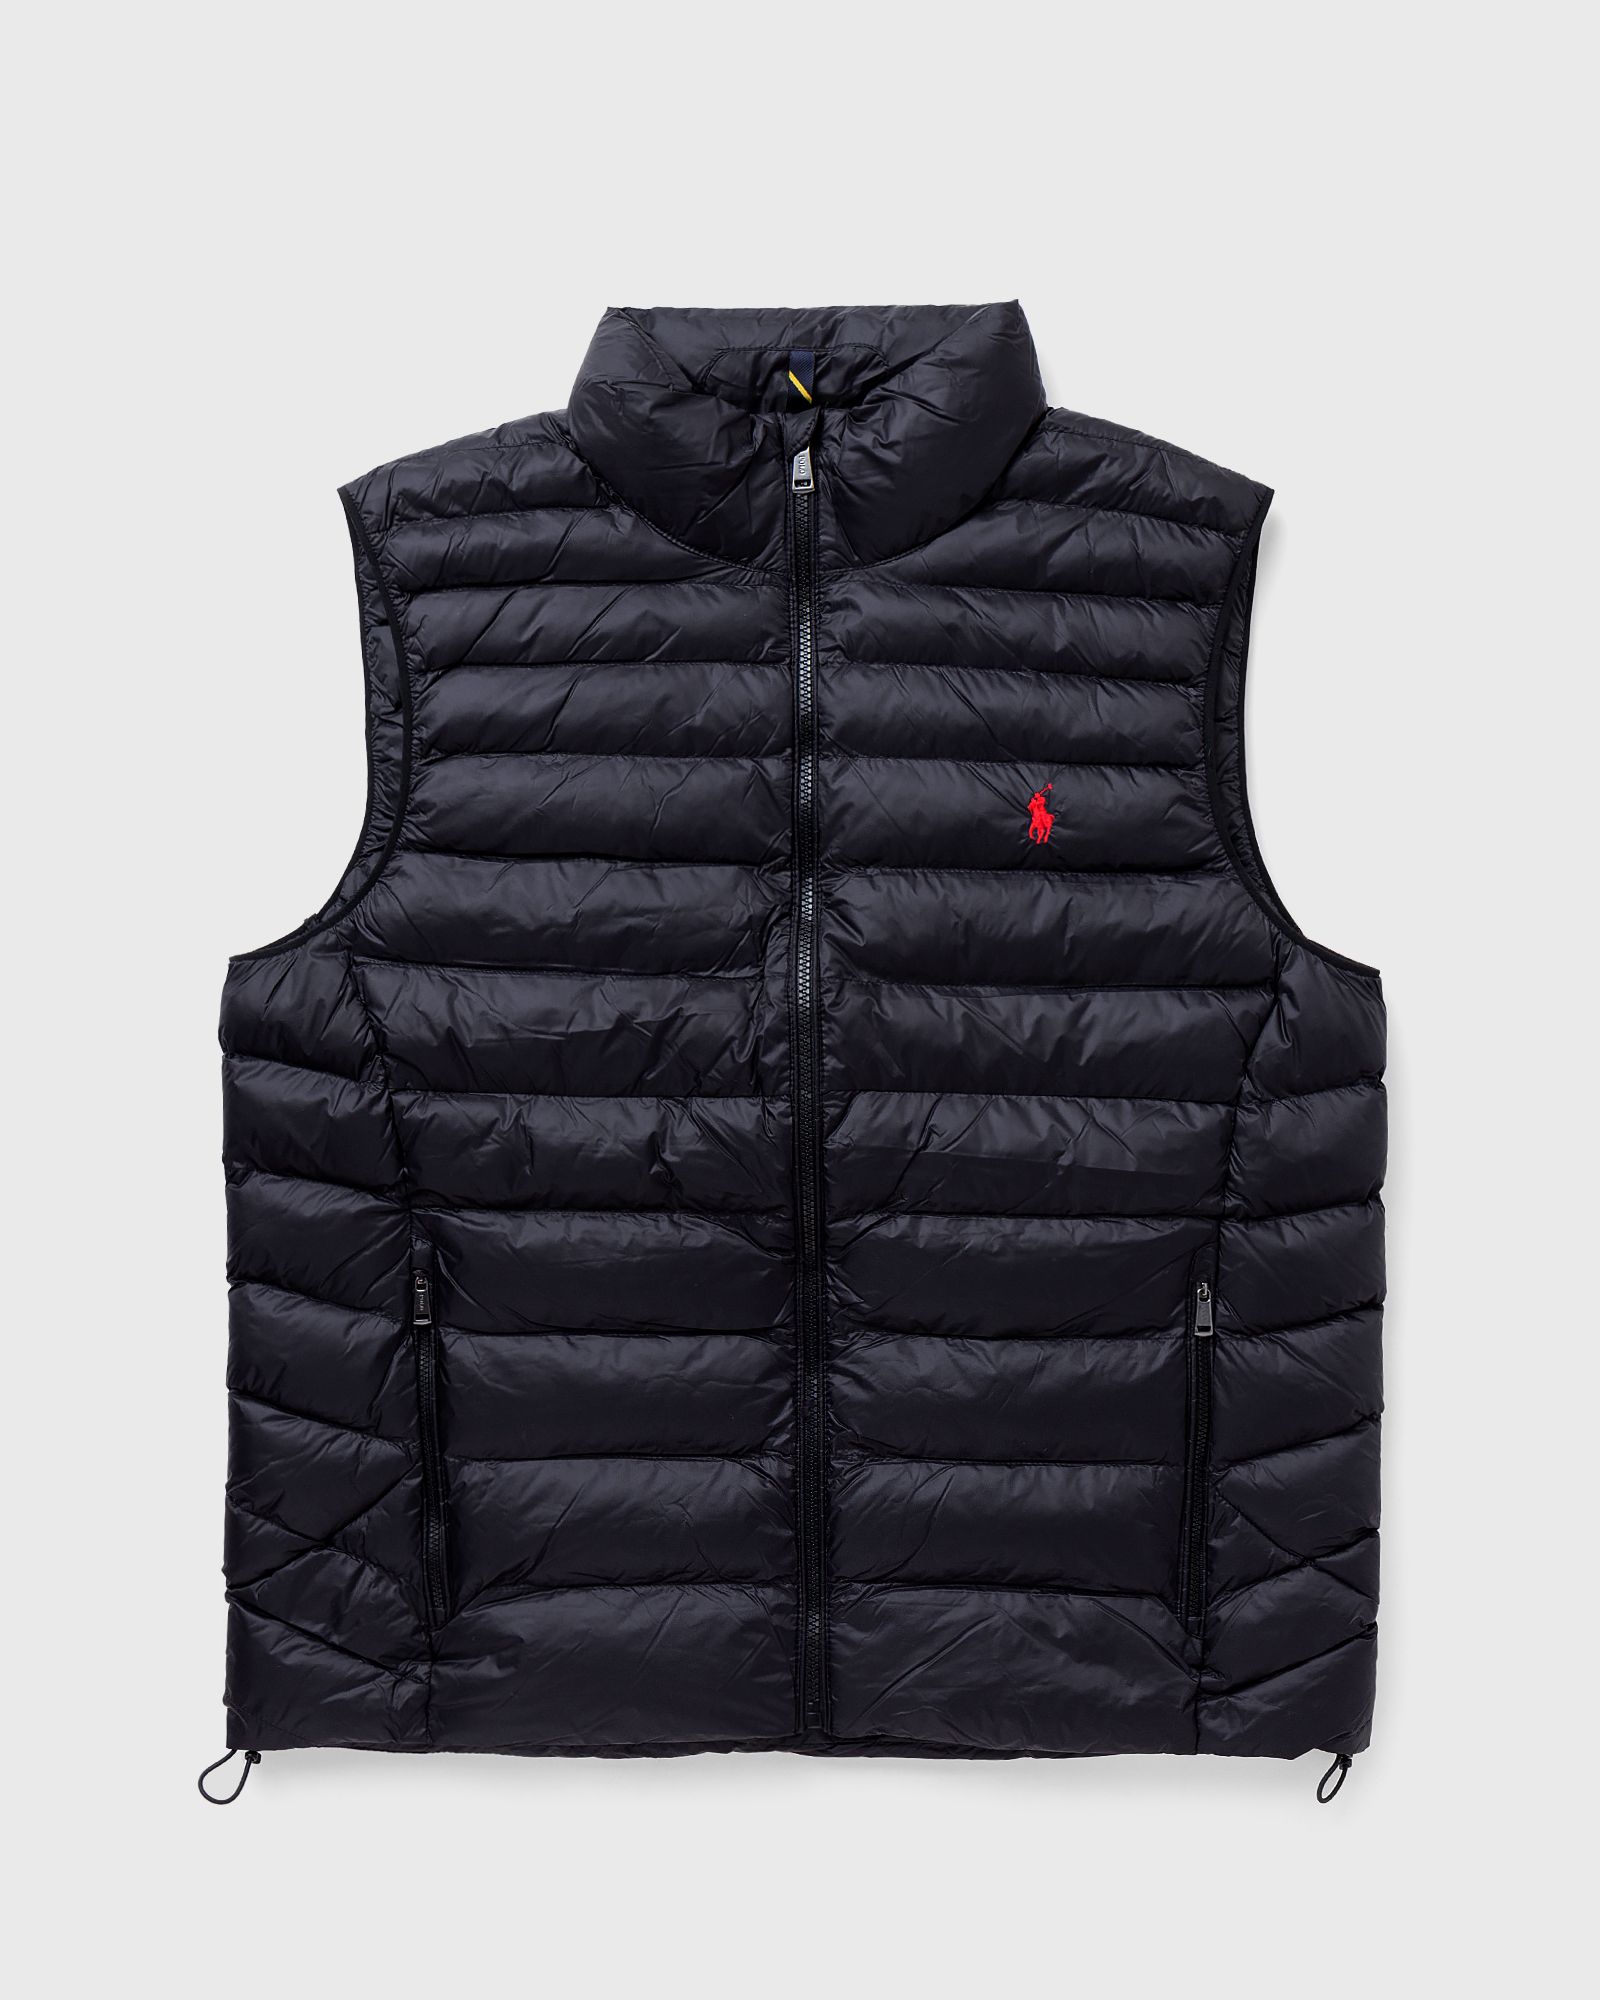 Polo Ralph Lauren - terra vest men vests black in größe:xxl